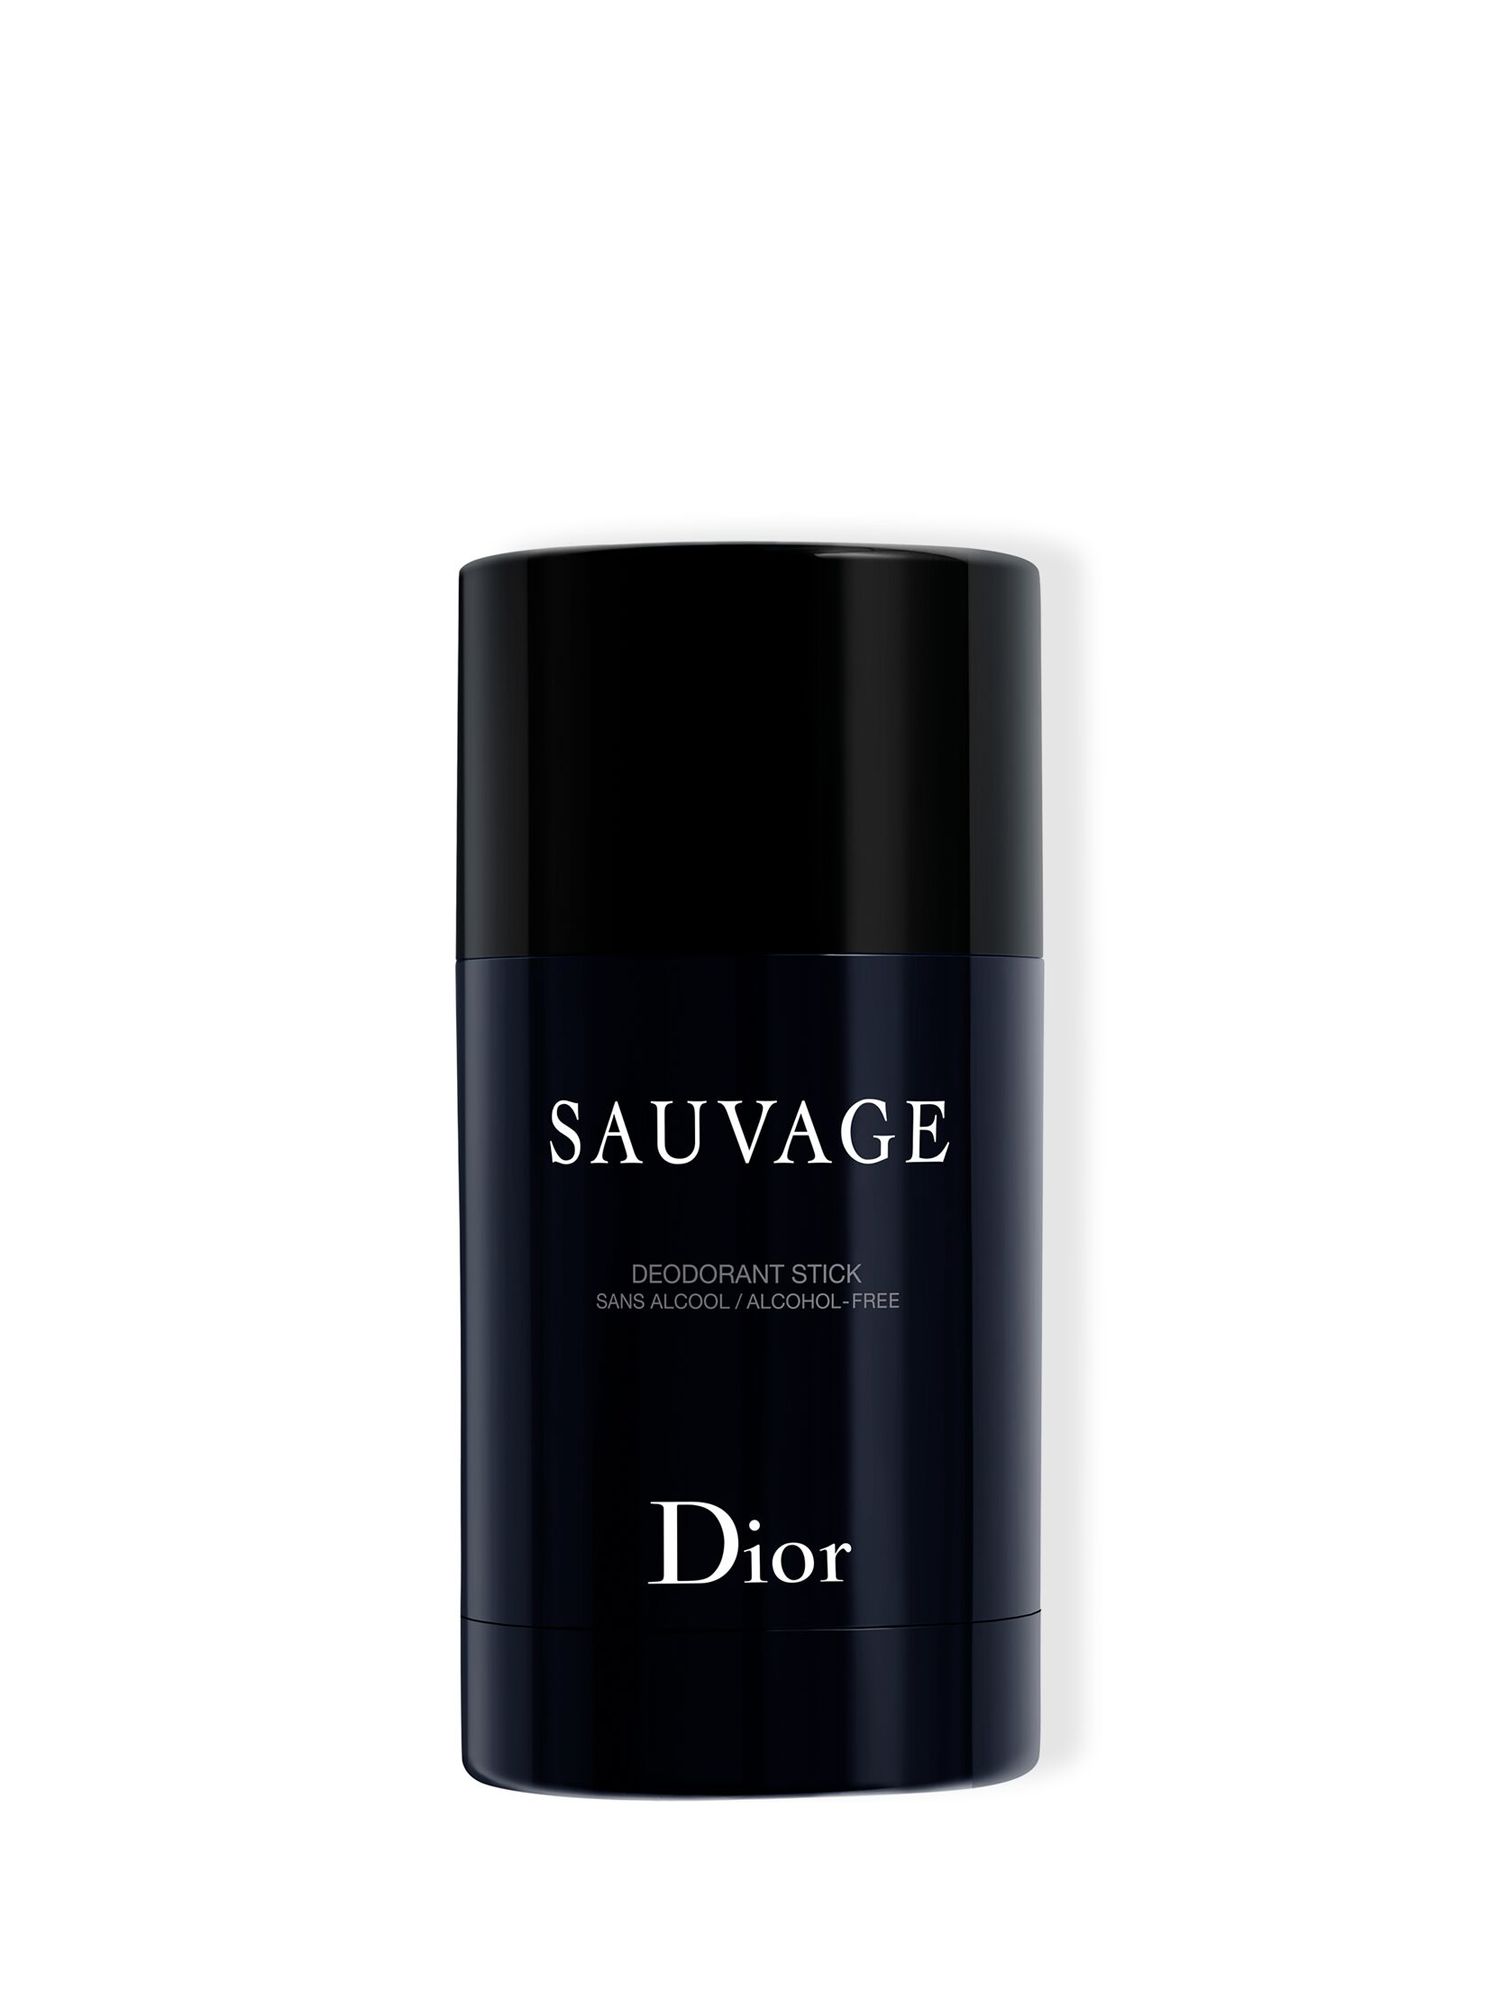 DIOR Sauvage Deodorant Stick, 75g 1